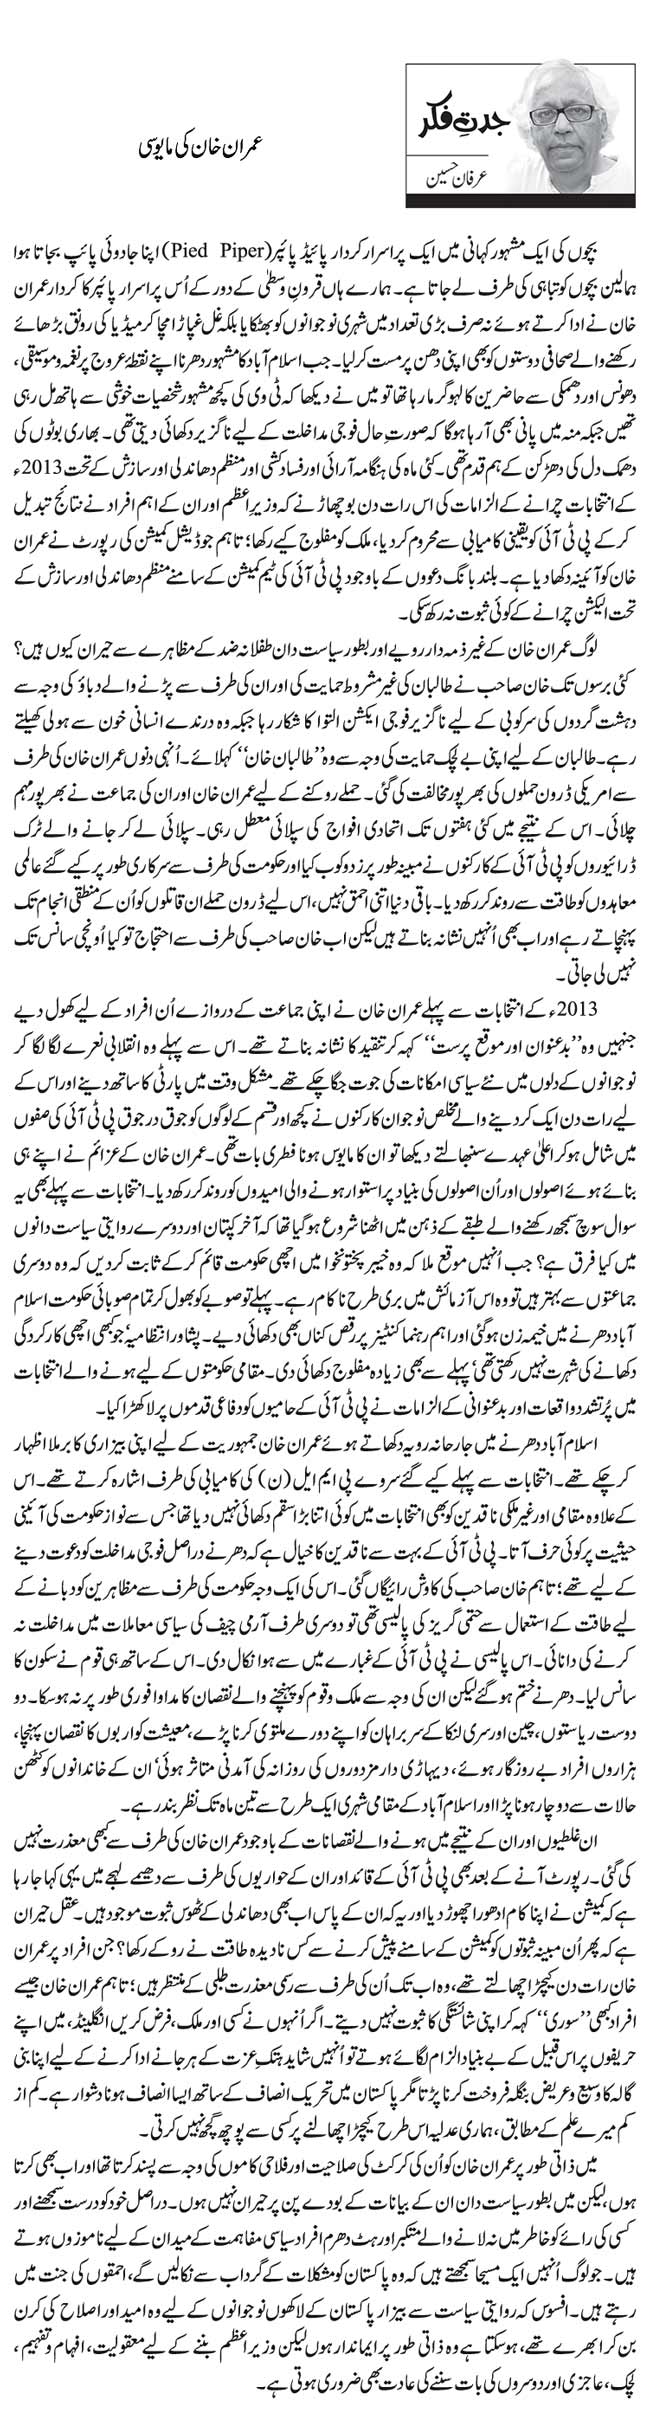 عمران خان کی مایوسی